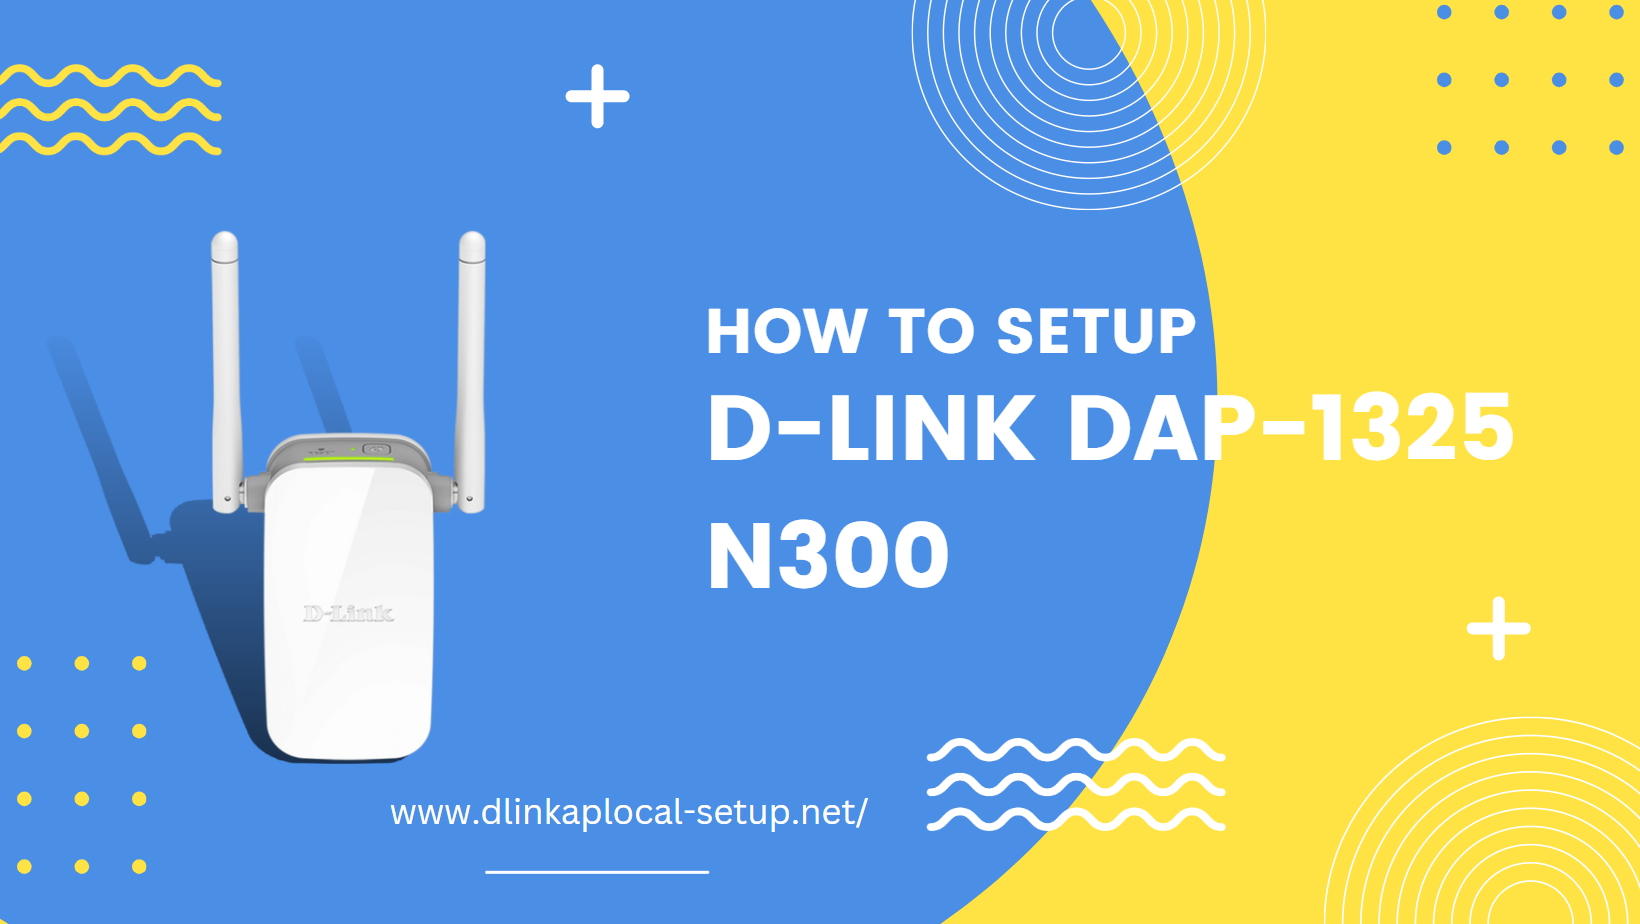 How to Setup D-Link DAP-1325 N300